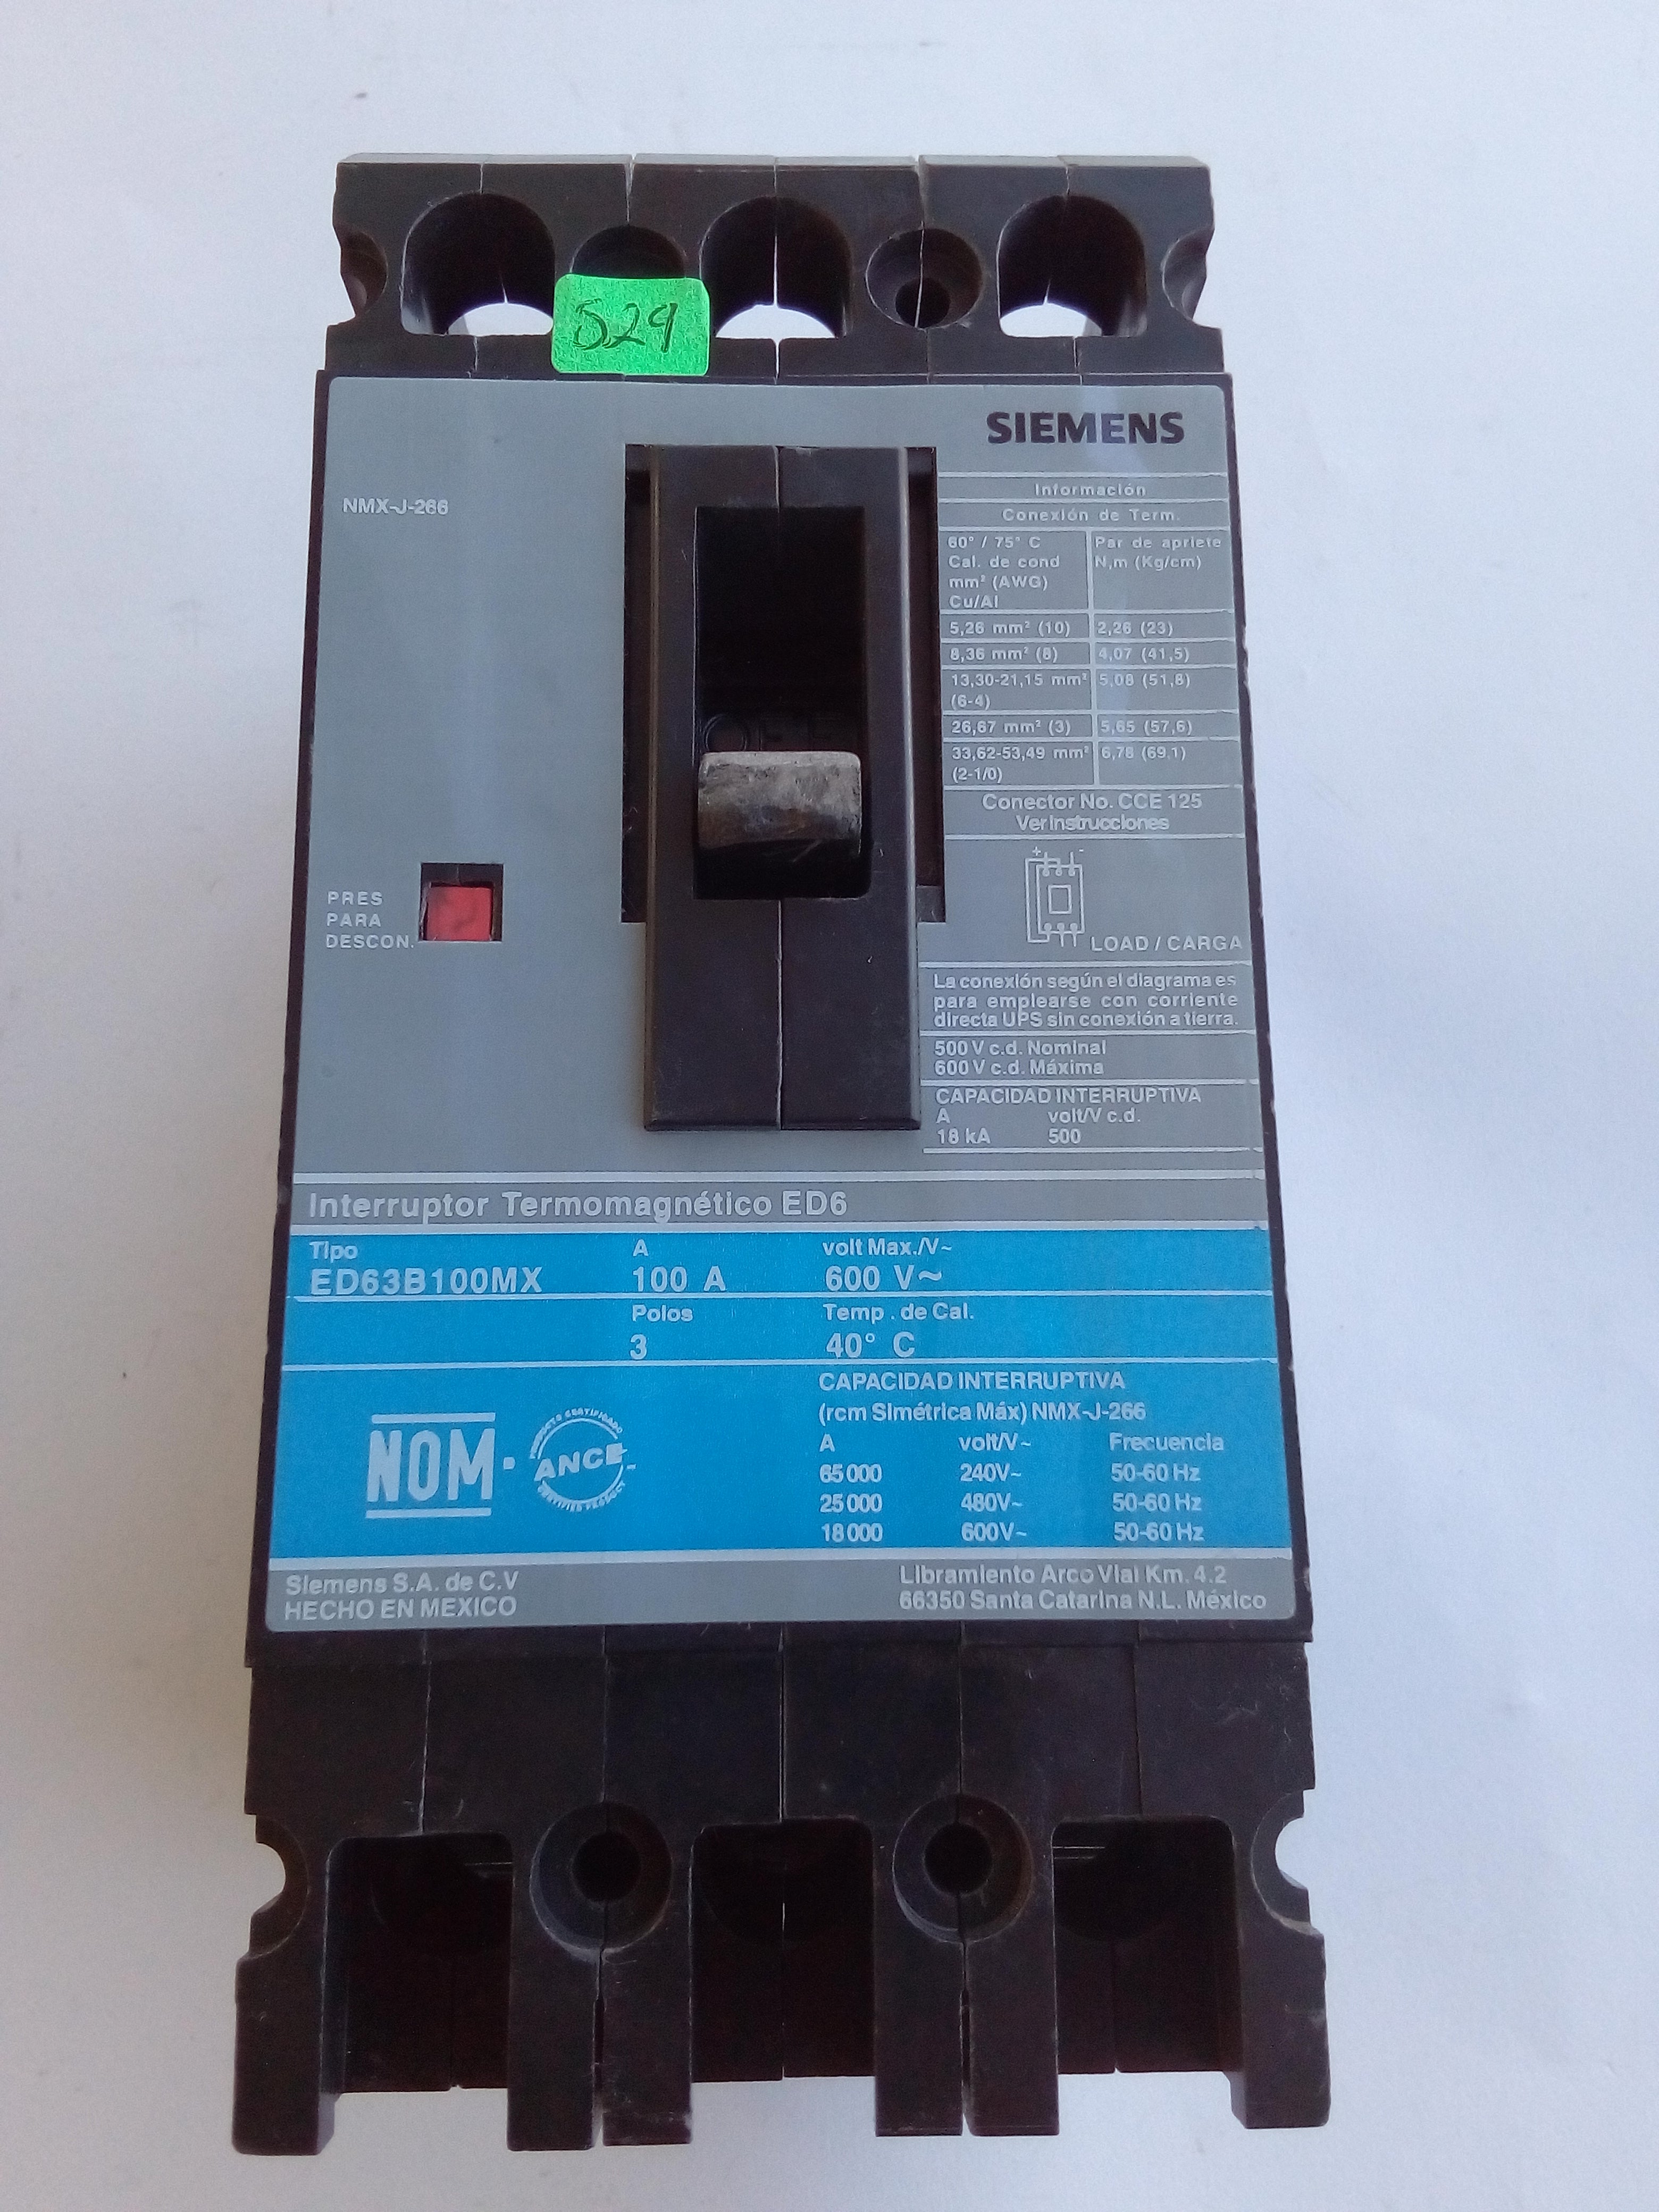 Interruptor Siemens ED63B100MX